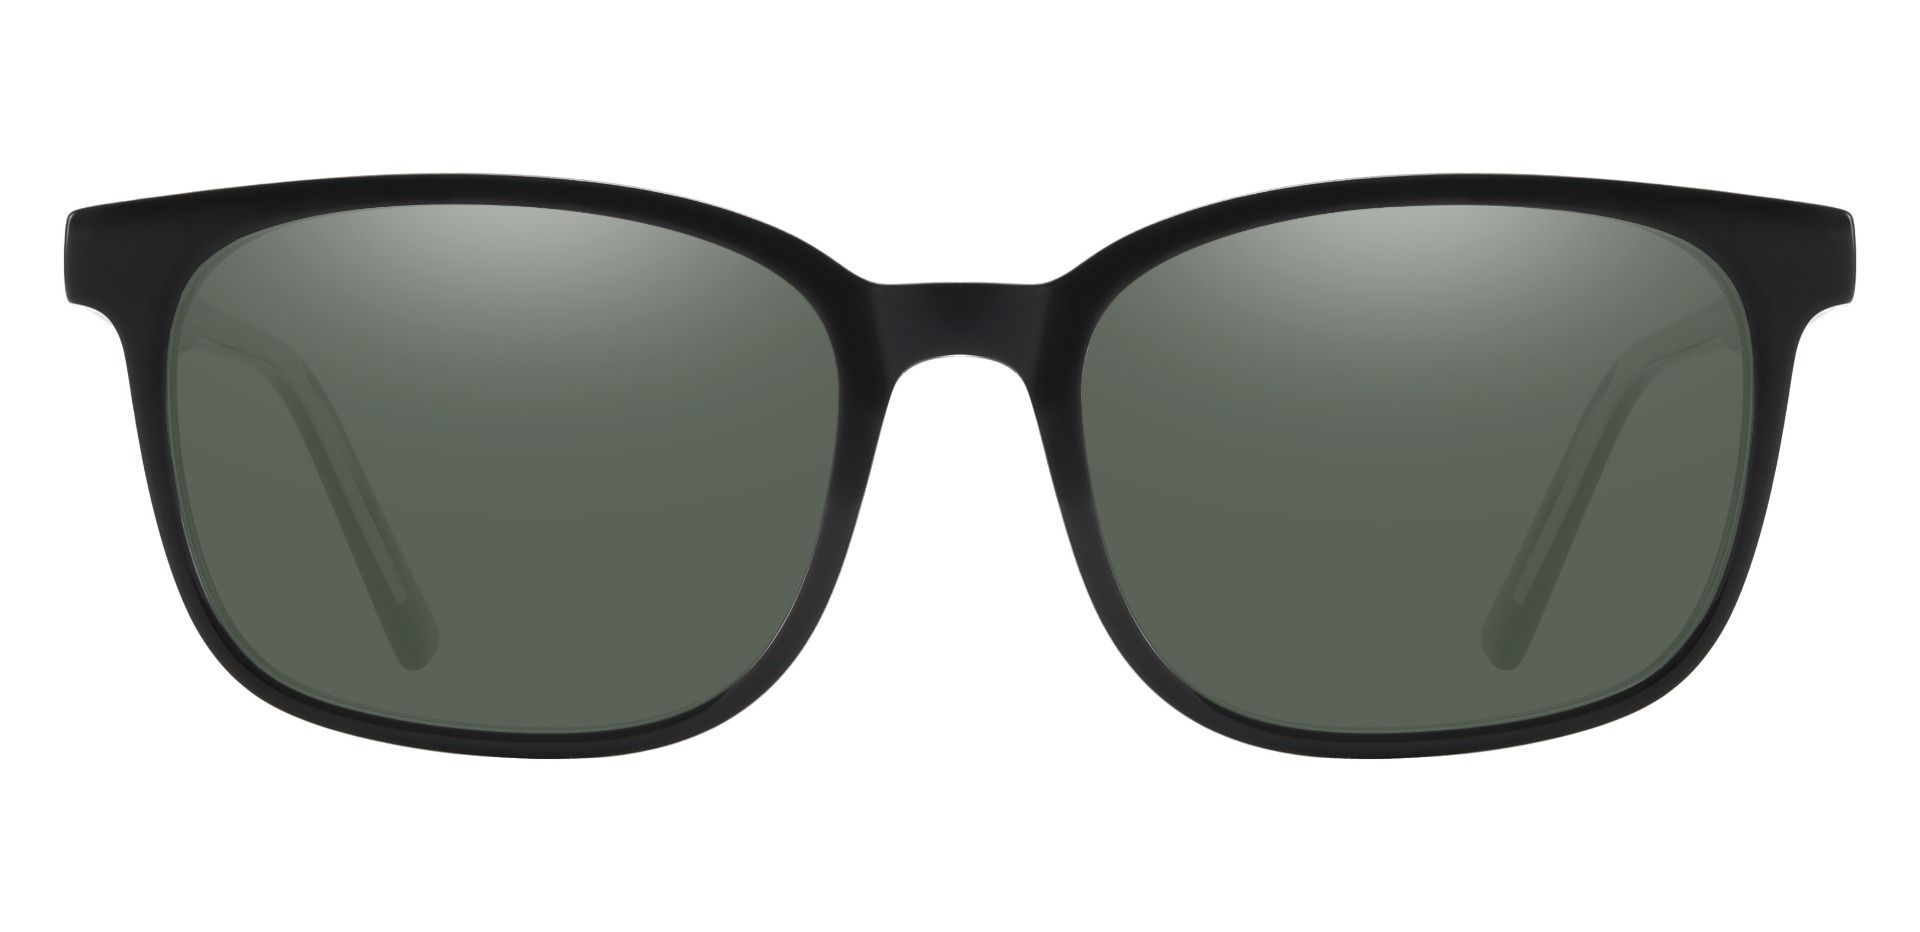 Windsor Rectangle Reading Sunglasses - Black Frame With Green Lenses